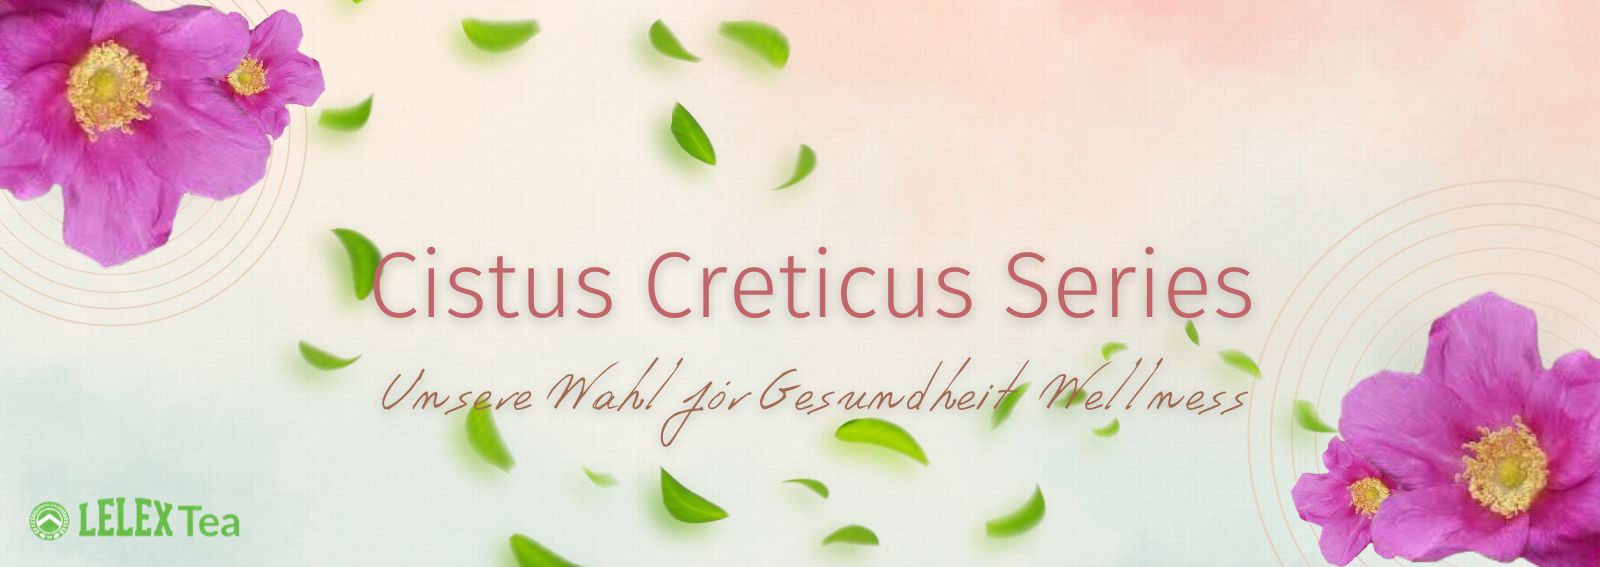 Cistus creticus Serie Incanus Graue Zistrose-Gesundheit